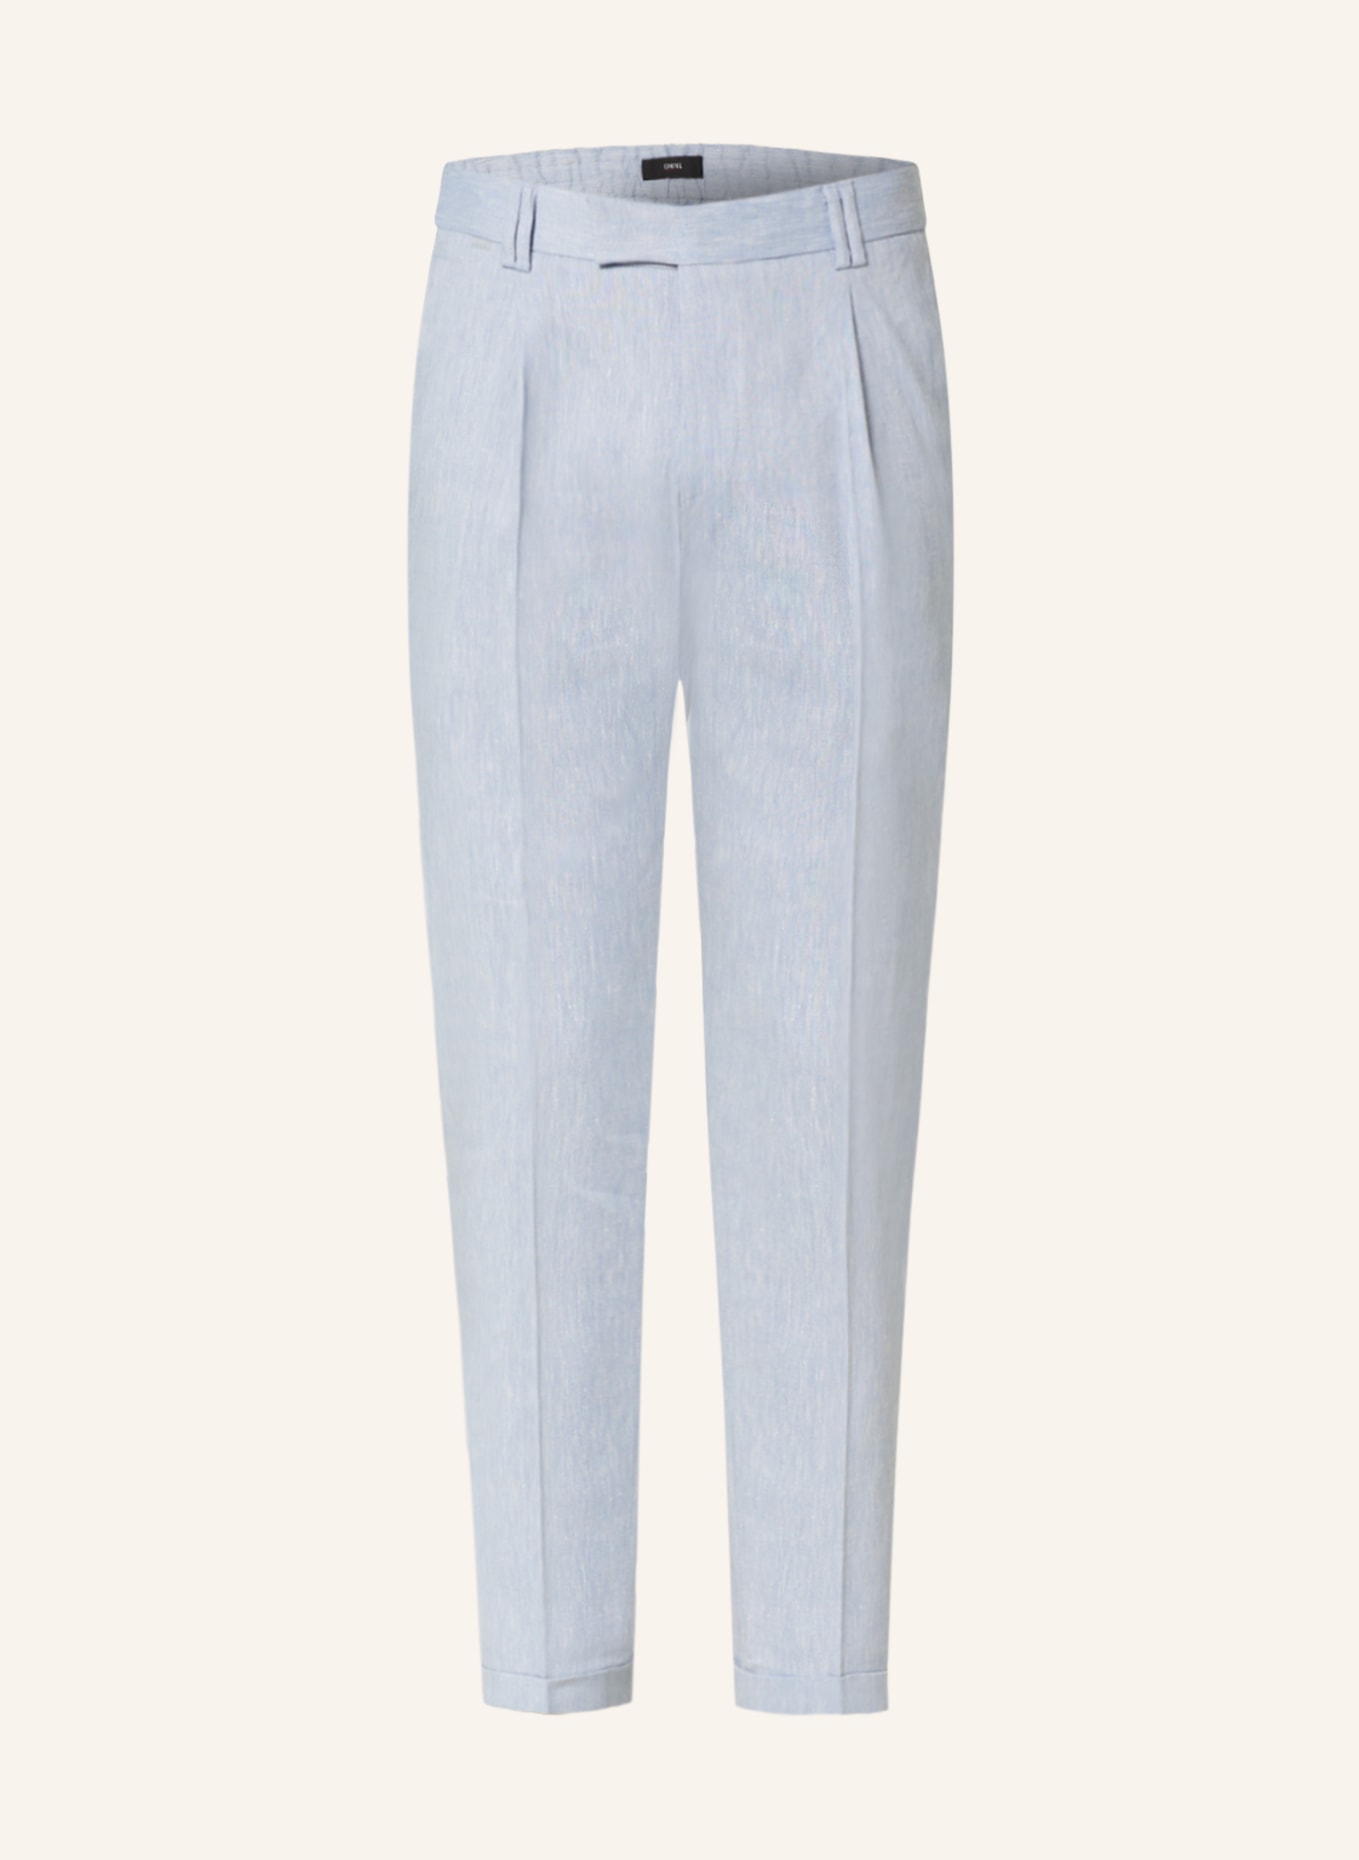 CINQUE Suit trousers CISAND extra slim fit, Color: LIGHT BLUE (Image 1)